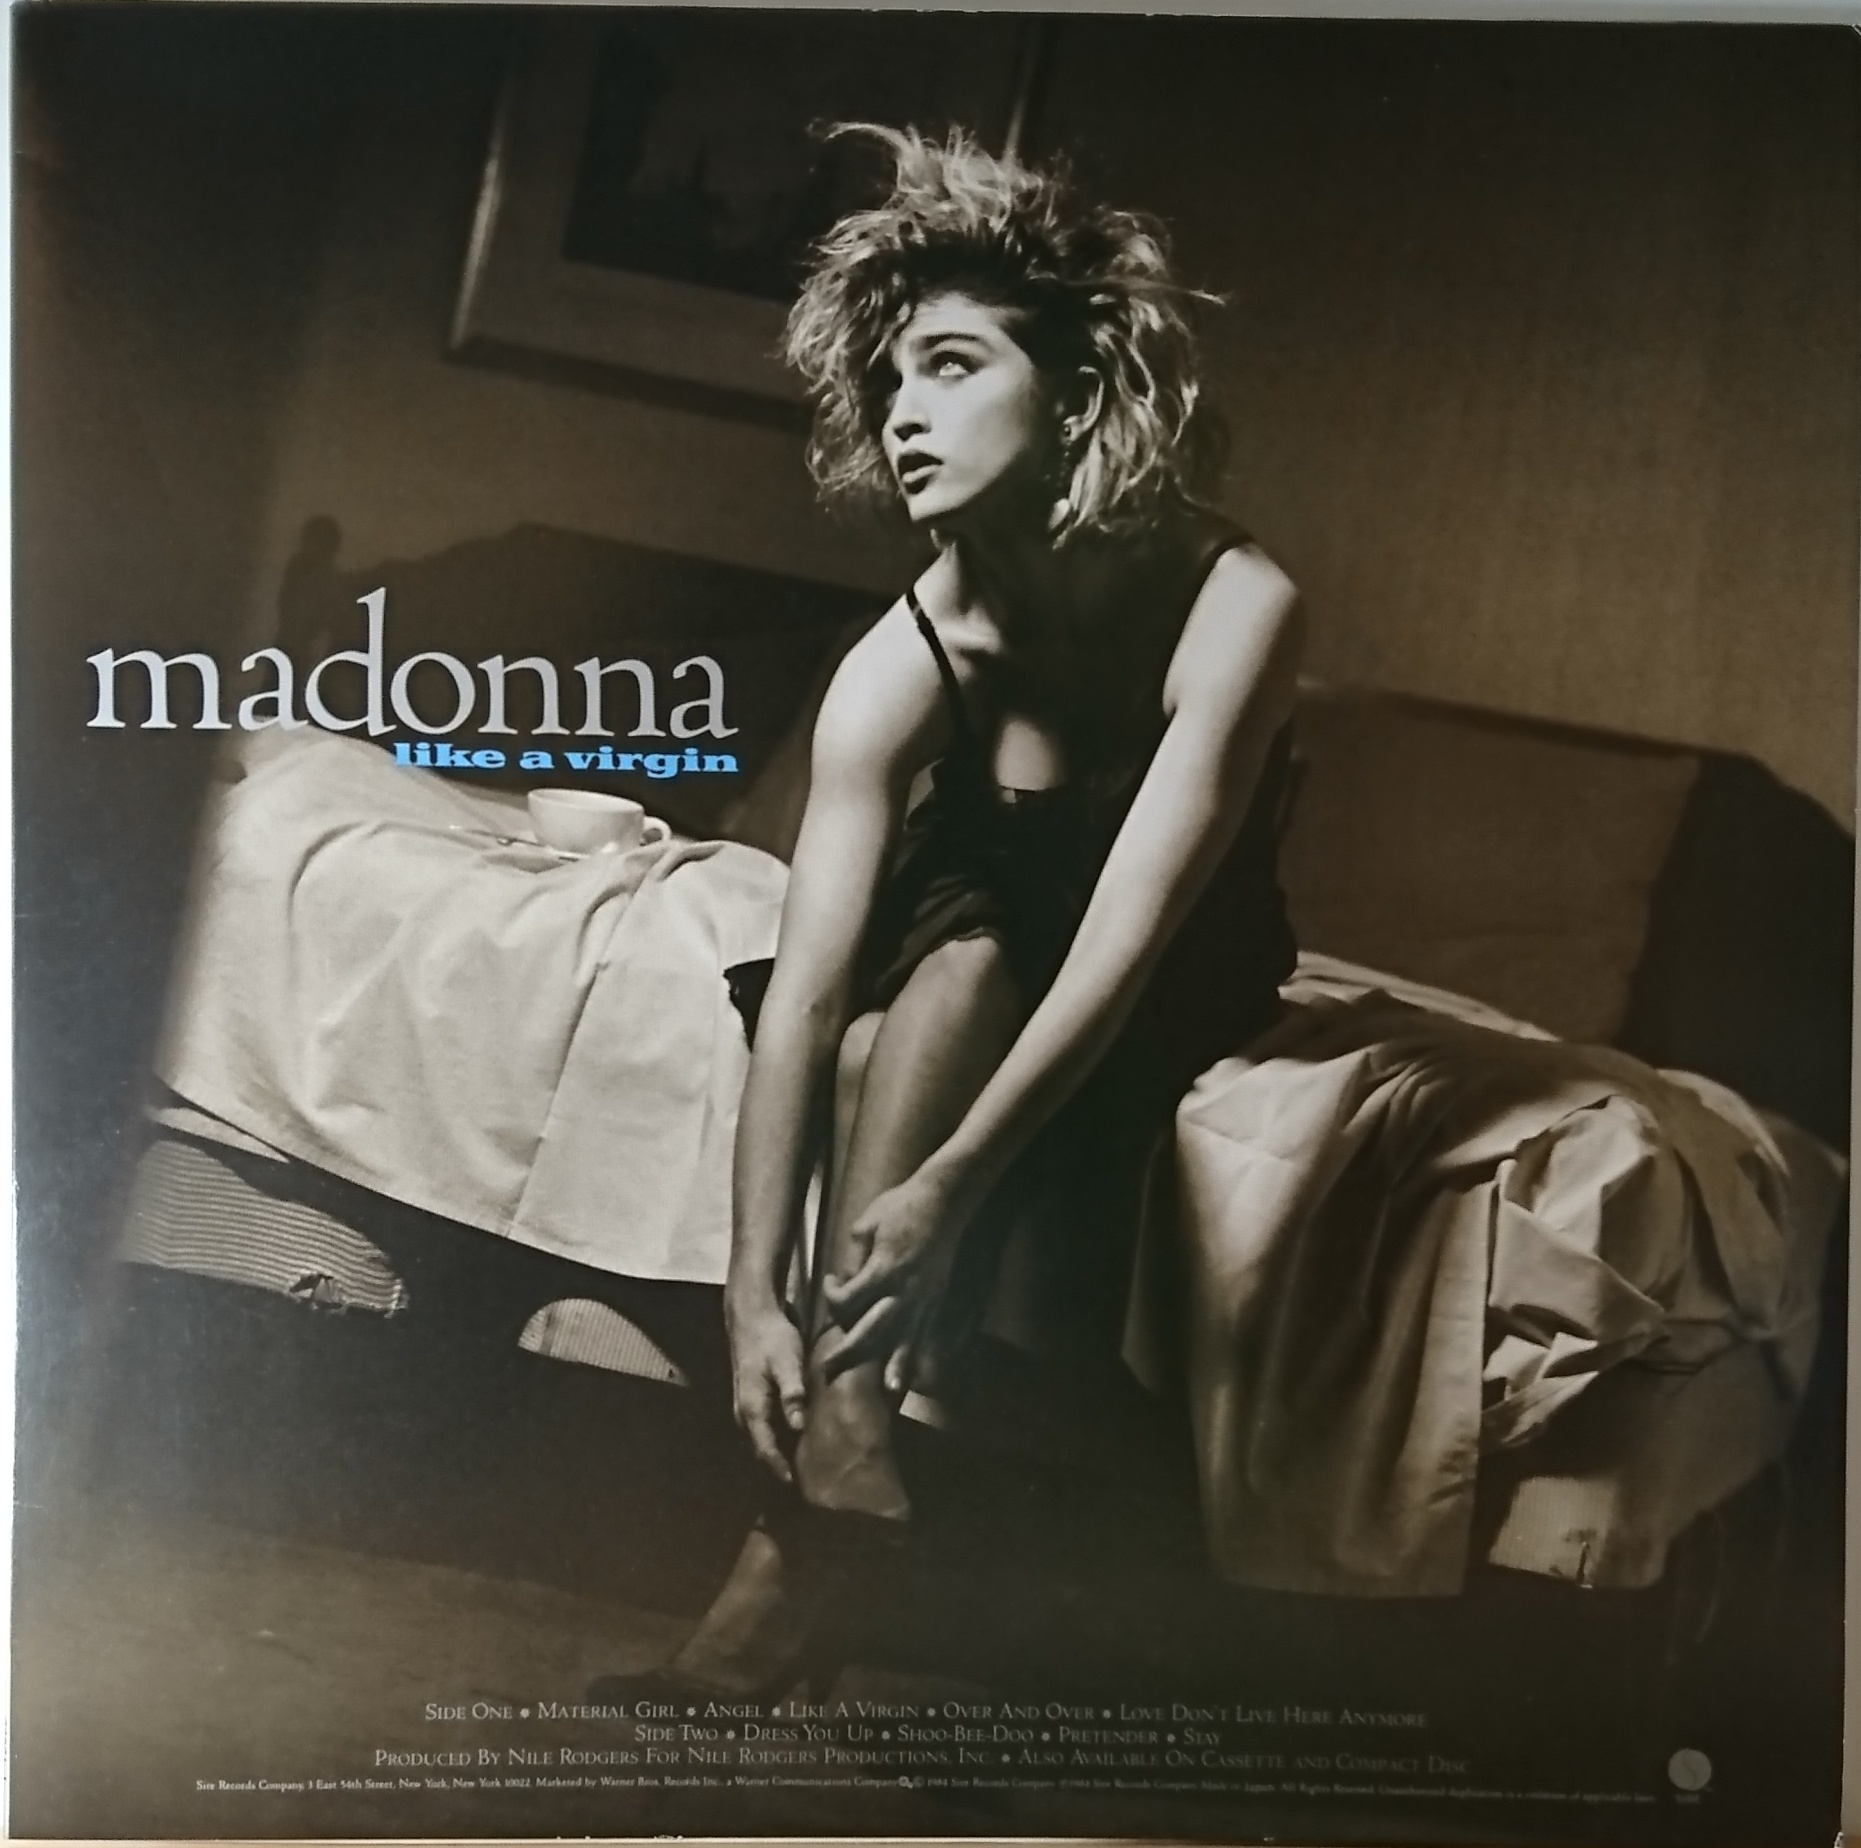 Like madonna песня. Madonna "like a Virgin". Like a Virgin Madonna - like a Virgin. Лайк э Верджин Мадонна живот. Madonna 2001 - like a Virgin.